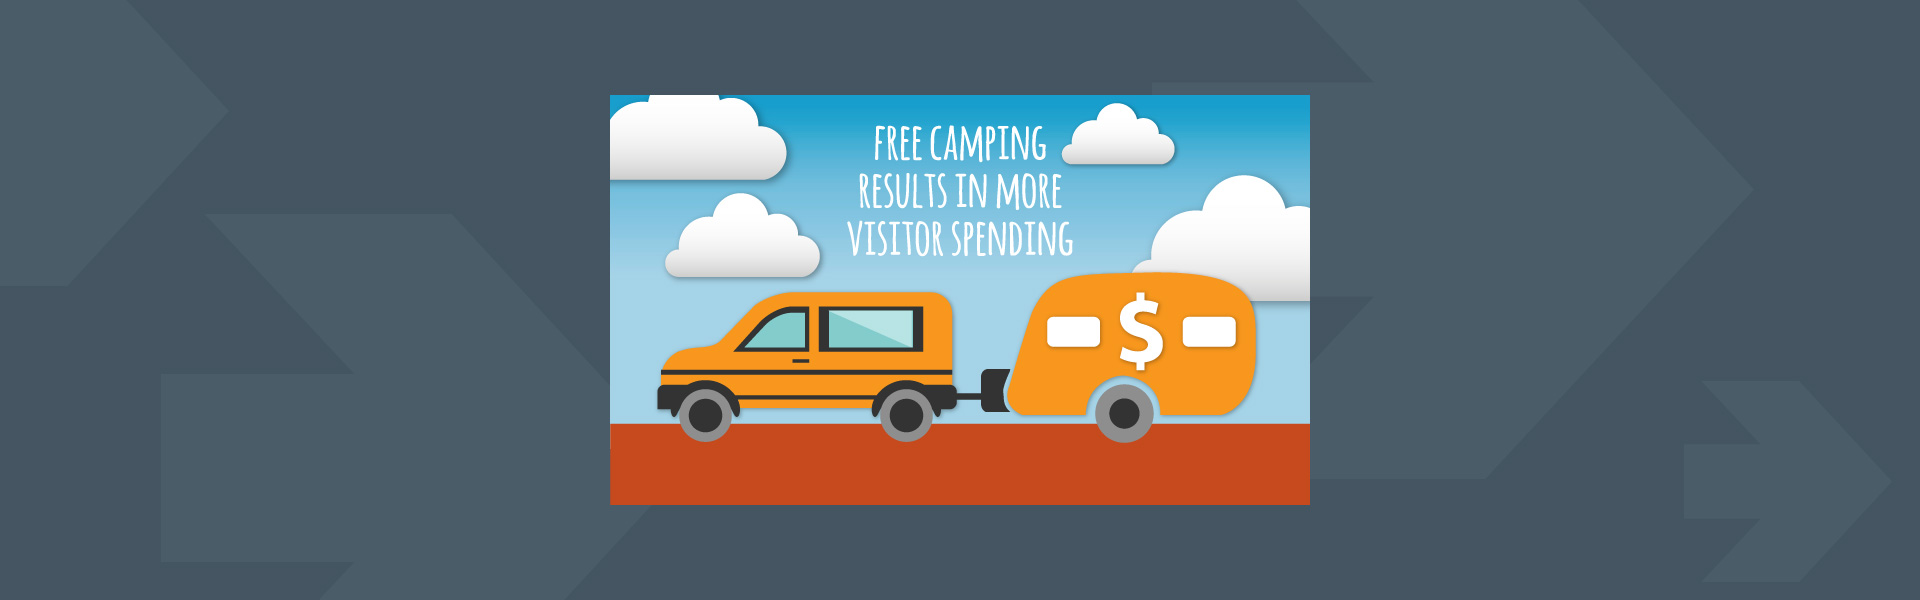 Free camping